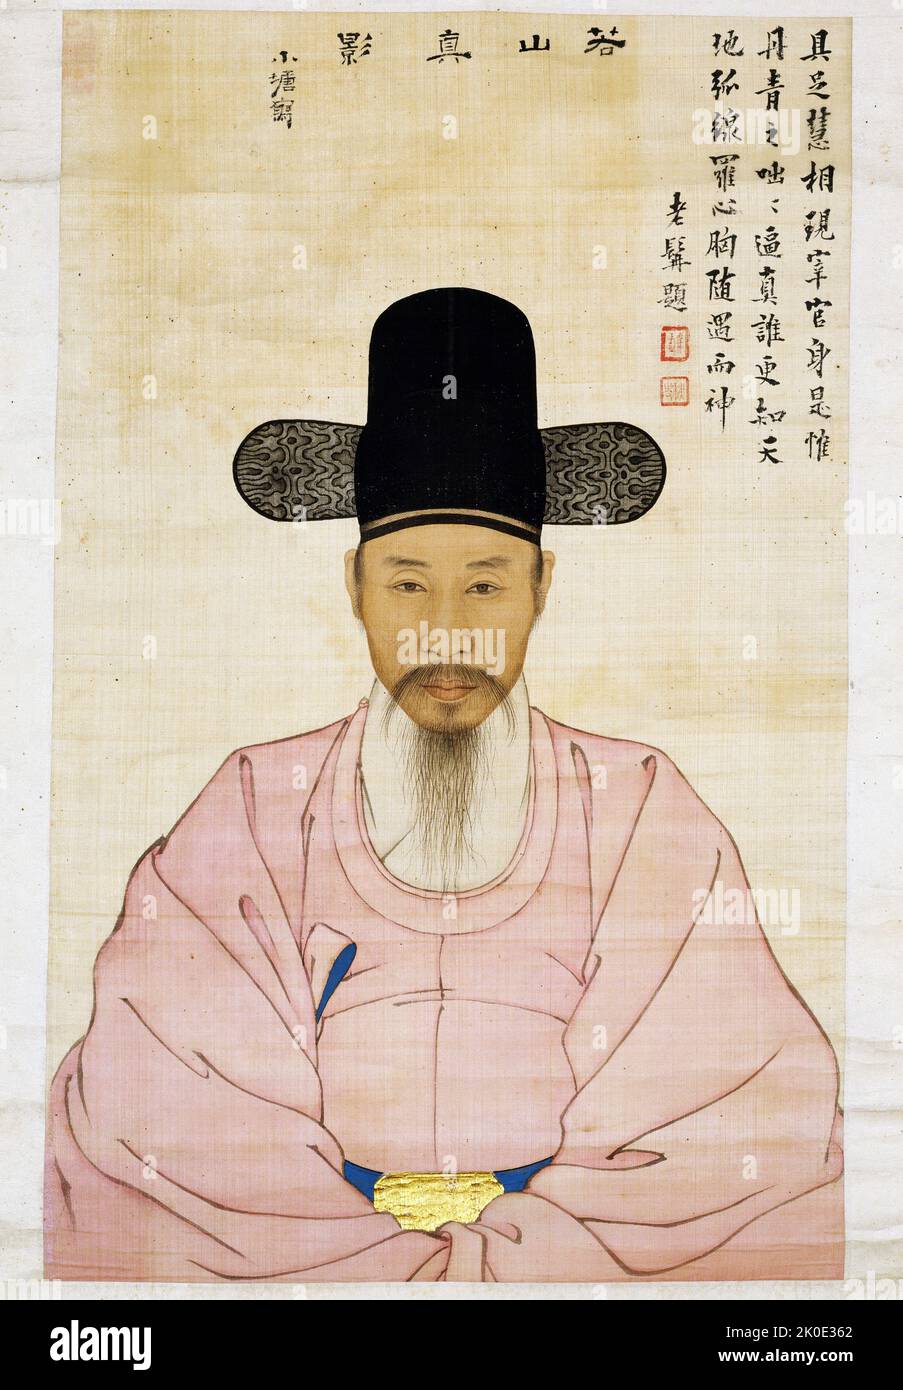 Kang Yi-o, aus dem Jinju Kang Clan, war ein Enkel des berühmten koreanischen Joseon, Gelehrter und Maler Kang SE-Hwang. In diesem halblangen, frontalen Porträt ist er in der alltäglichen rosafarbenen Robe eines Beamten und einem schwarzen Seidenhut dargestellt. Stockfoto